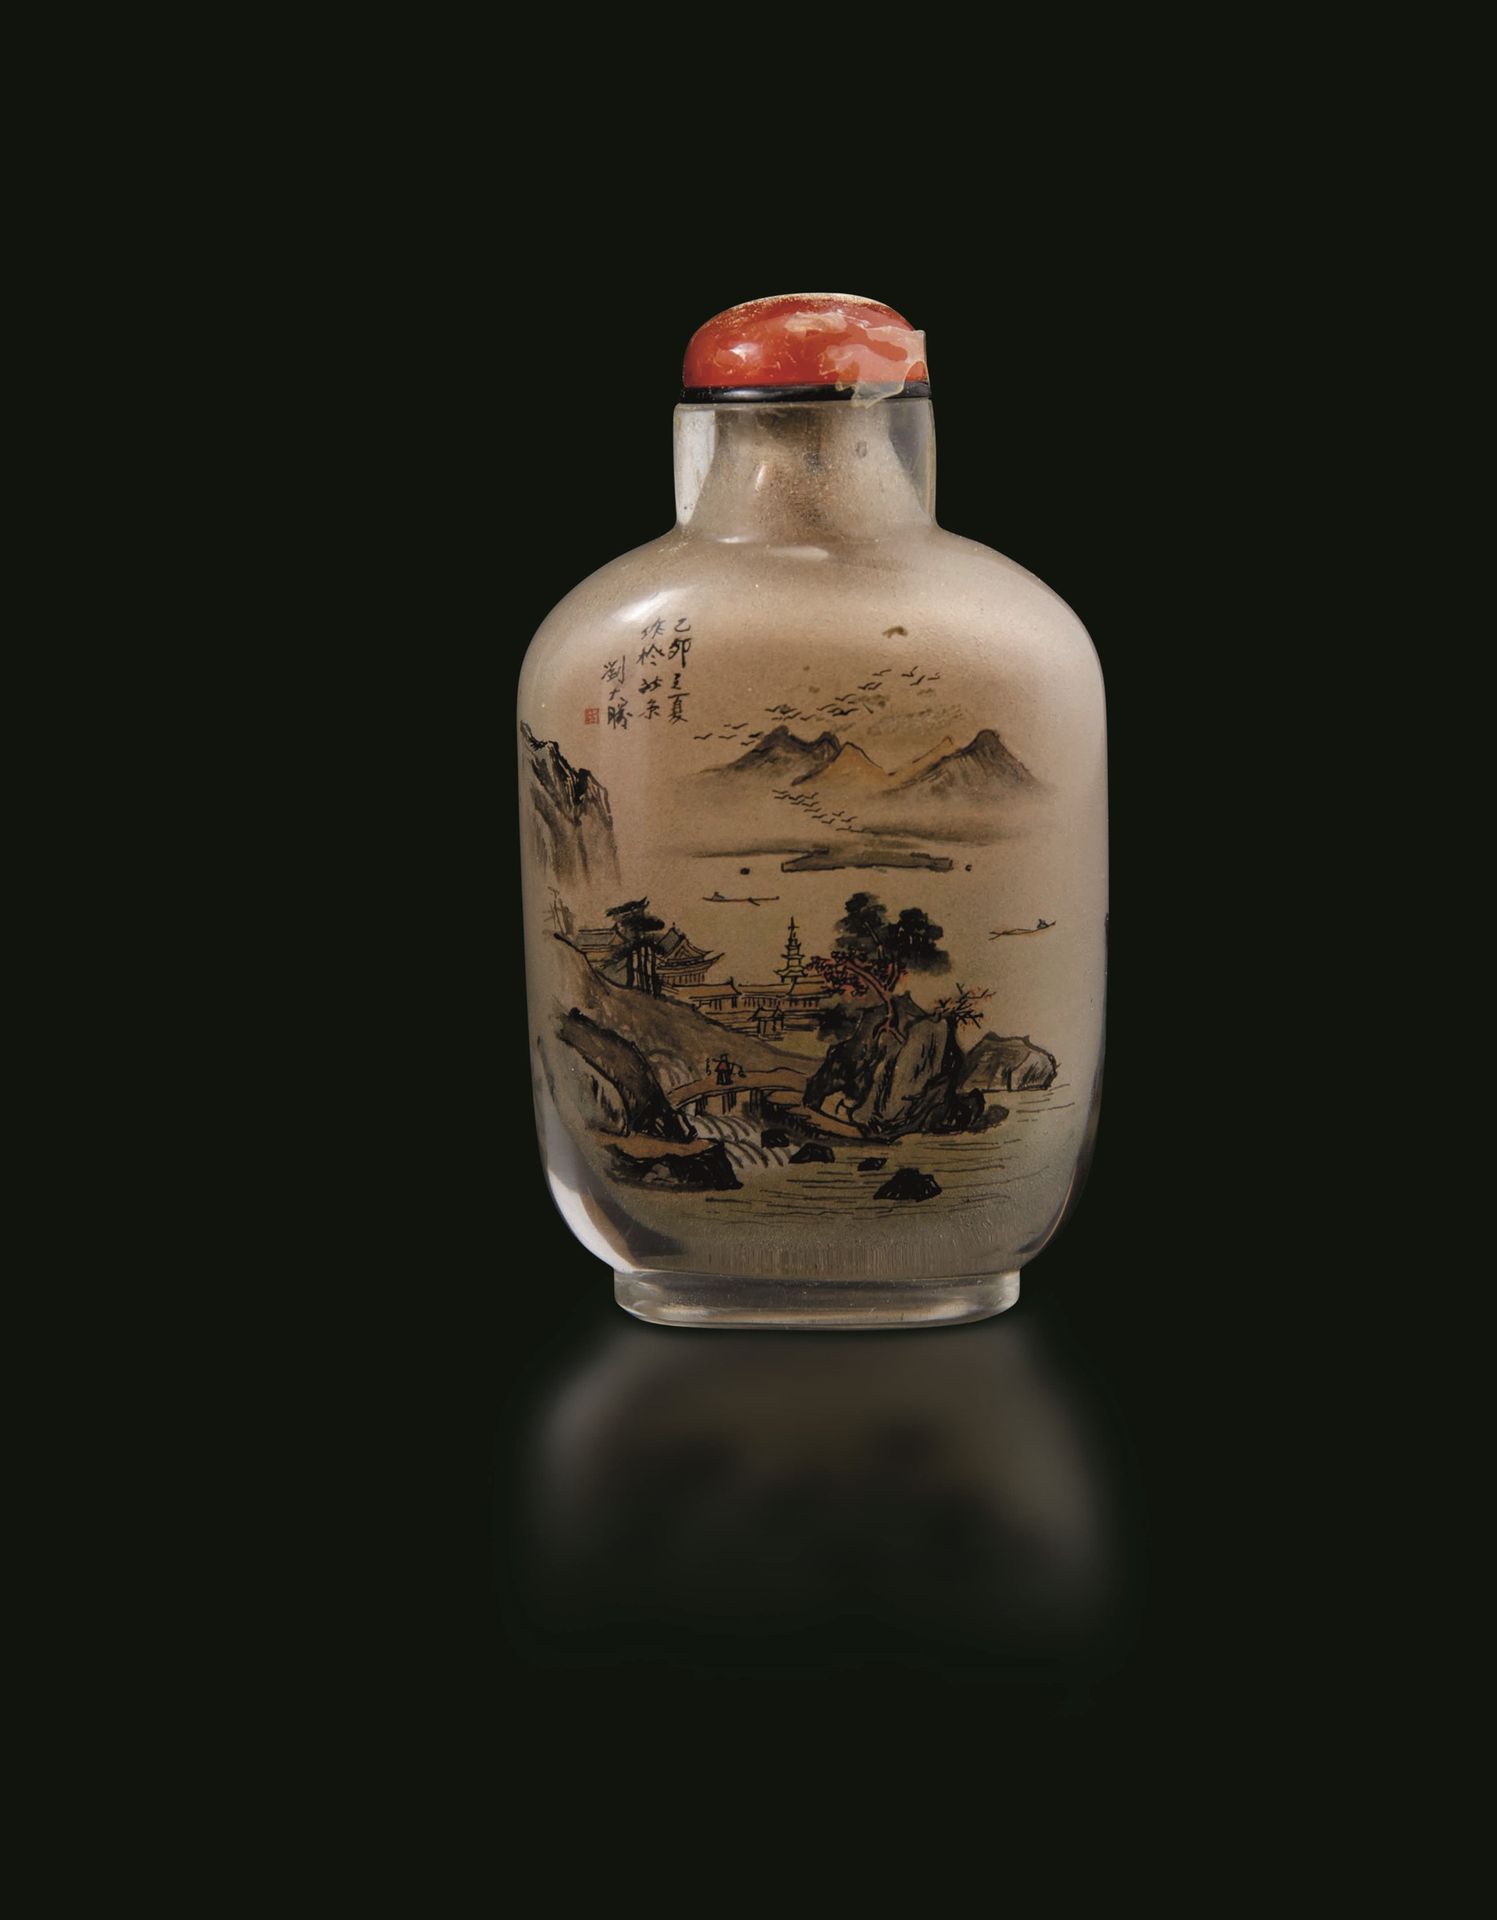 A glass snuff bottle, China, Republic, 1900s H 7cm